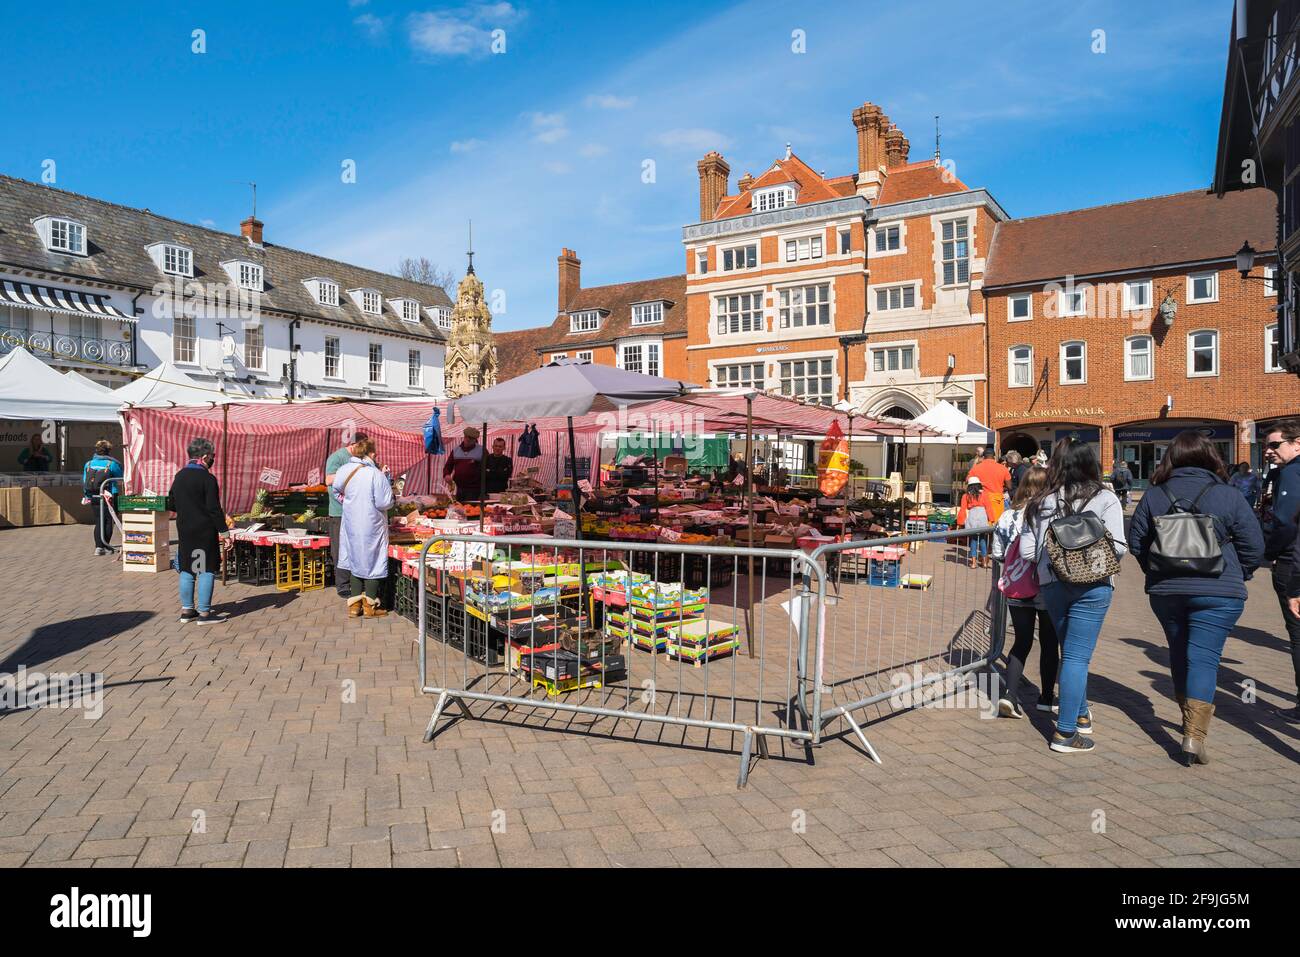 Marché de Safran Walden, vue en été du marché tenu chaque samedi dans le centre de Saffron Walden, Essex UK Banque D'Images